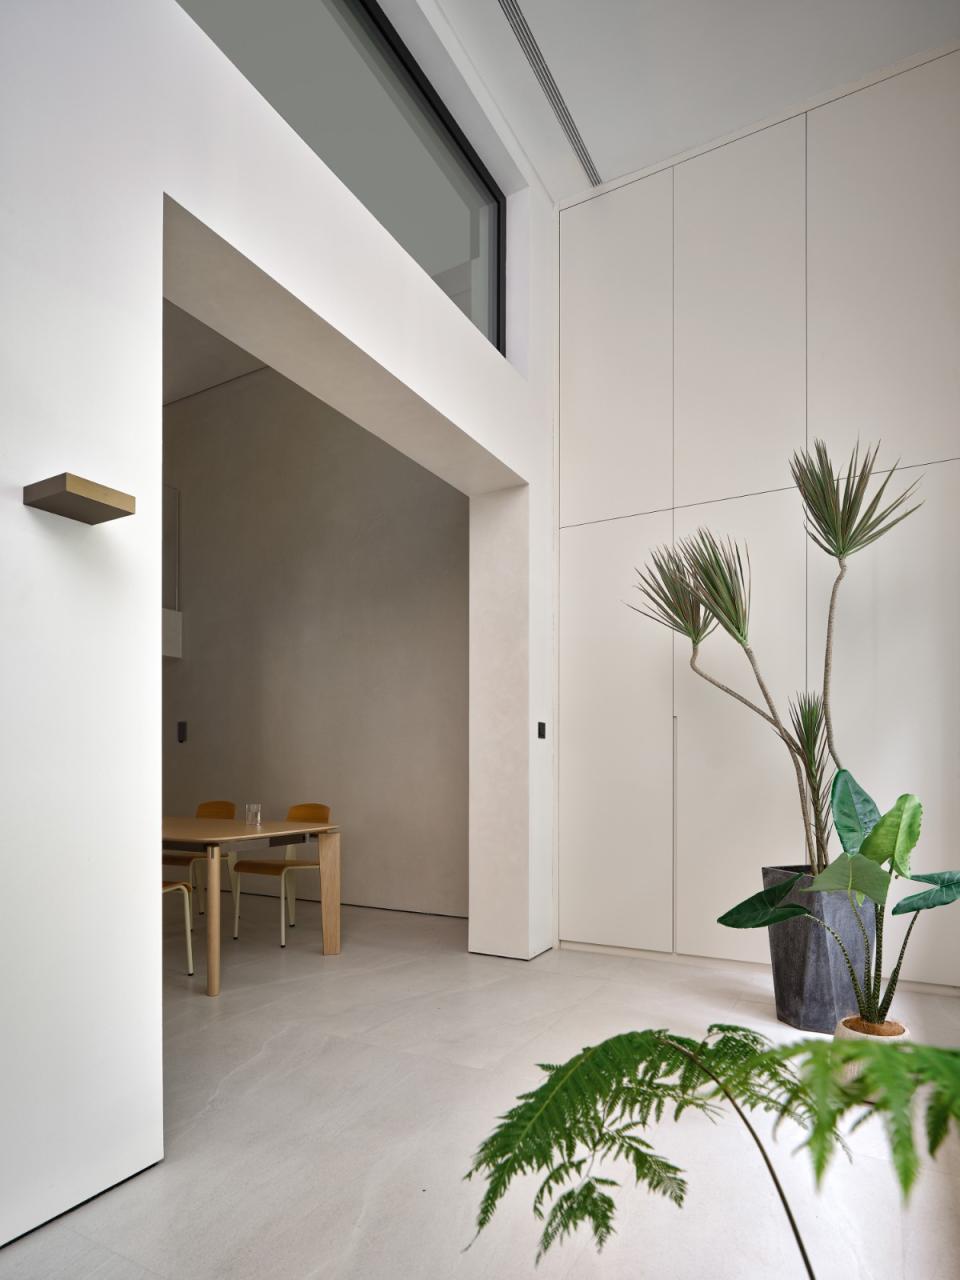 梧桐树下的420平米复式公寓: 为年轻家庭巧妙创建”视线连通”挑高空间